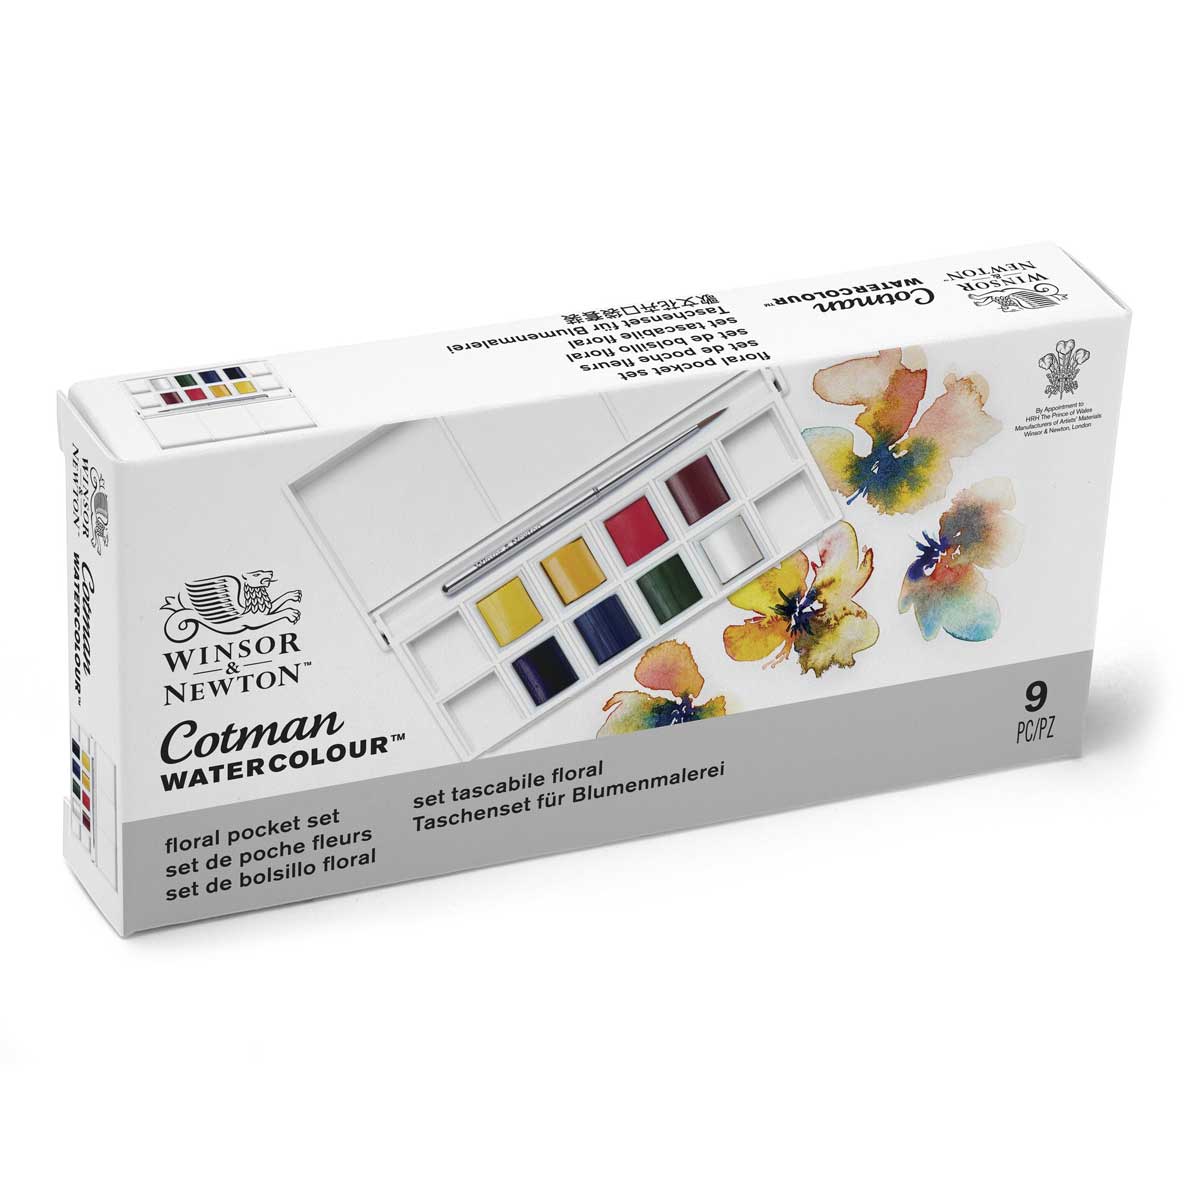 Winsor & Newton - Cotman Watercolour - Pocket Set - Floral